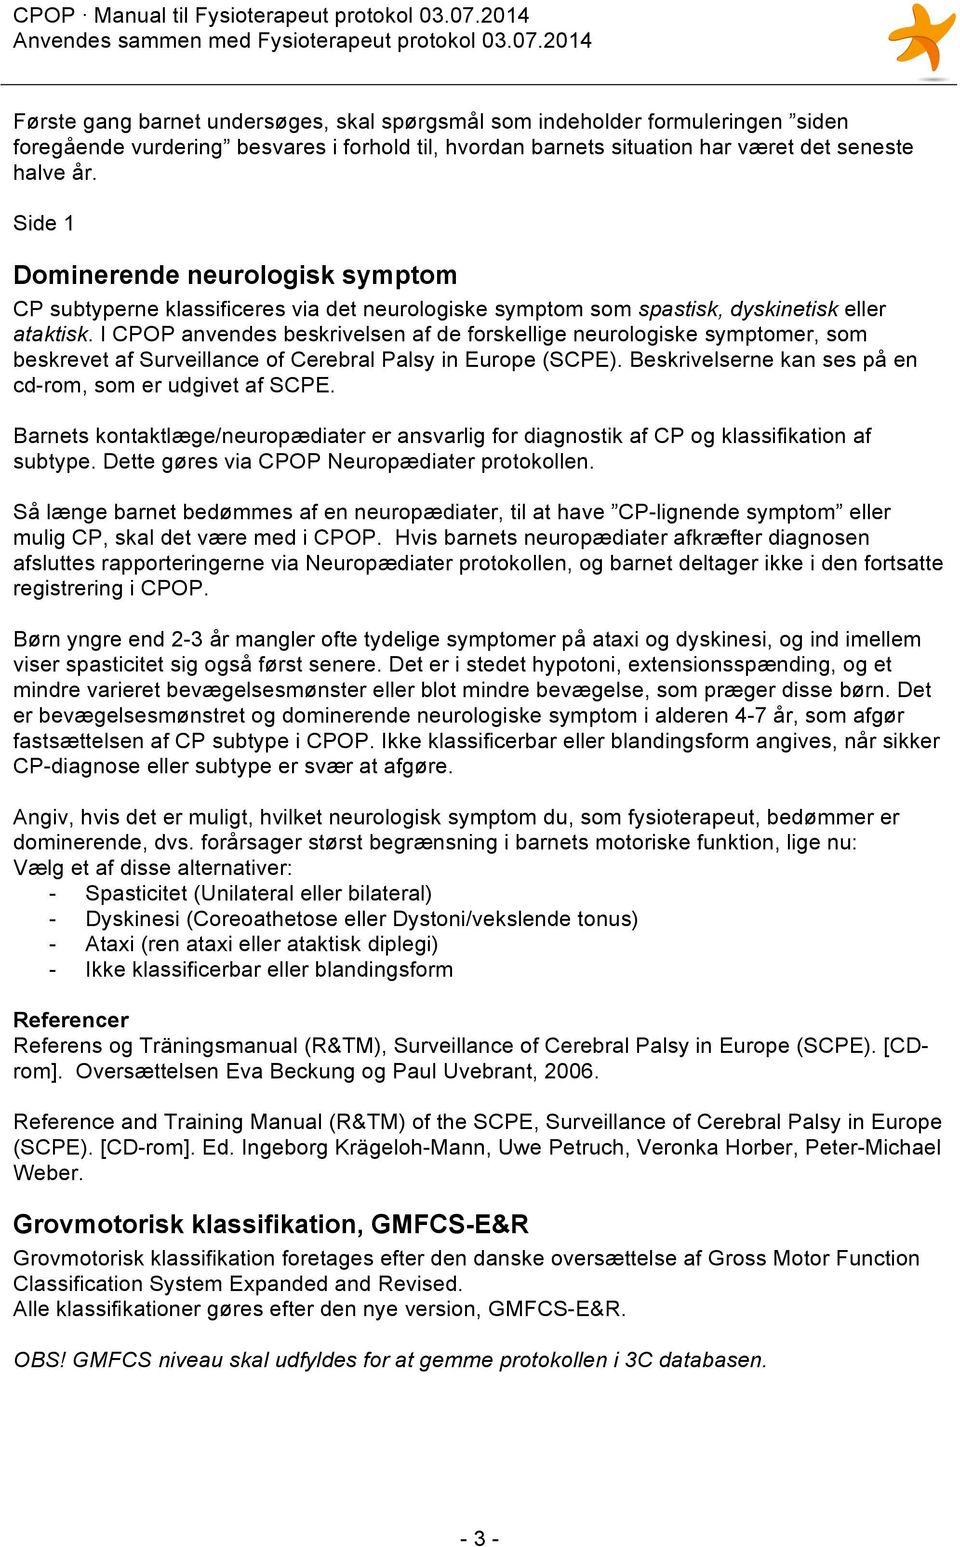 I CPOP anvendes beskrivelsen af de forskellige neurologiske symptomer, som beskrevet af Surveillance of Cerebral Palsy in Europe (SCPE). Beskrivelserne kan ses på en cd-rom, som er udgivet af SCPE.